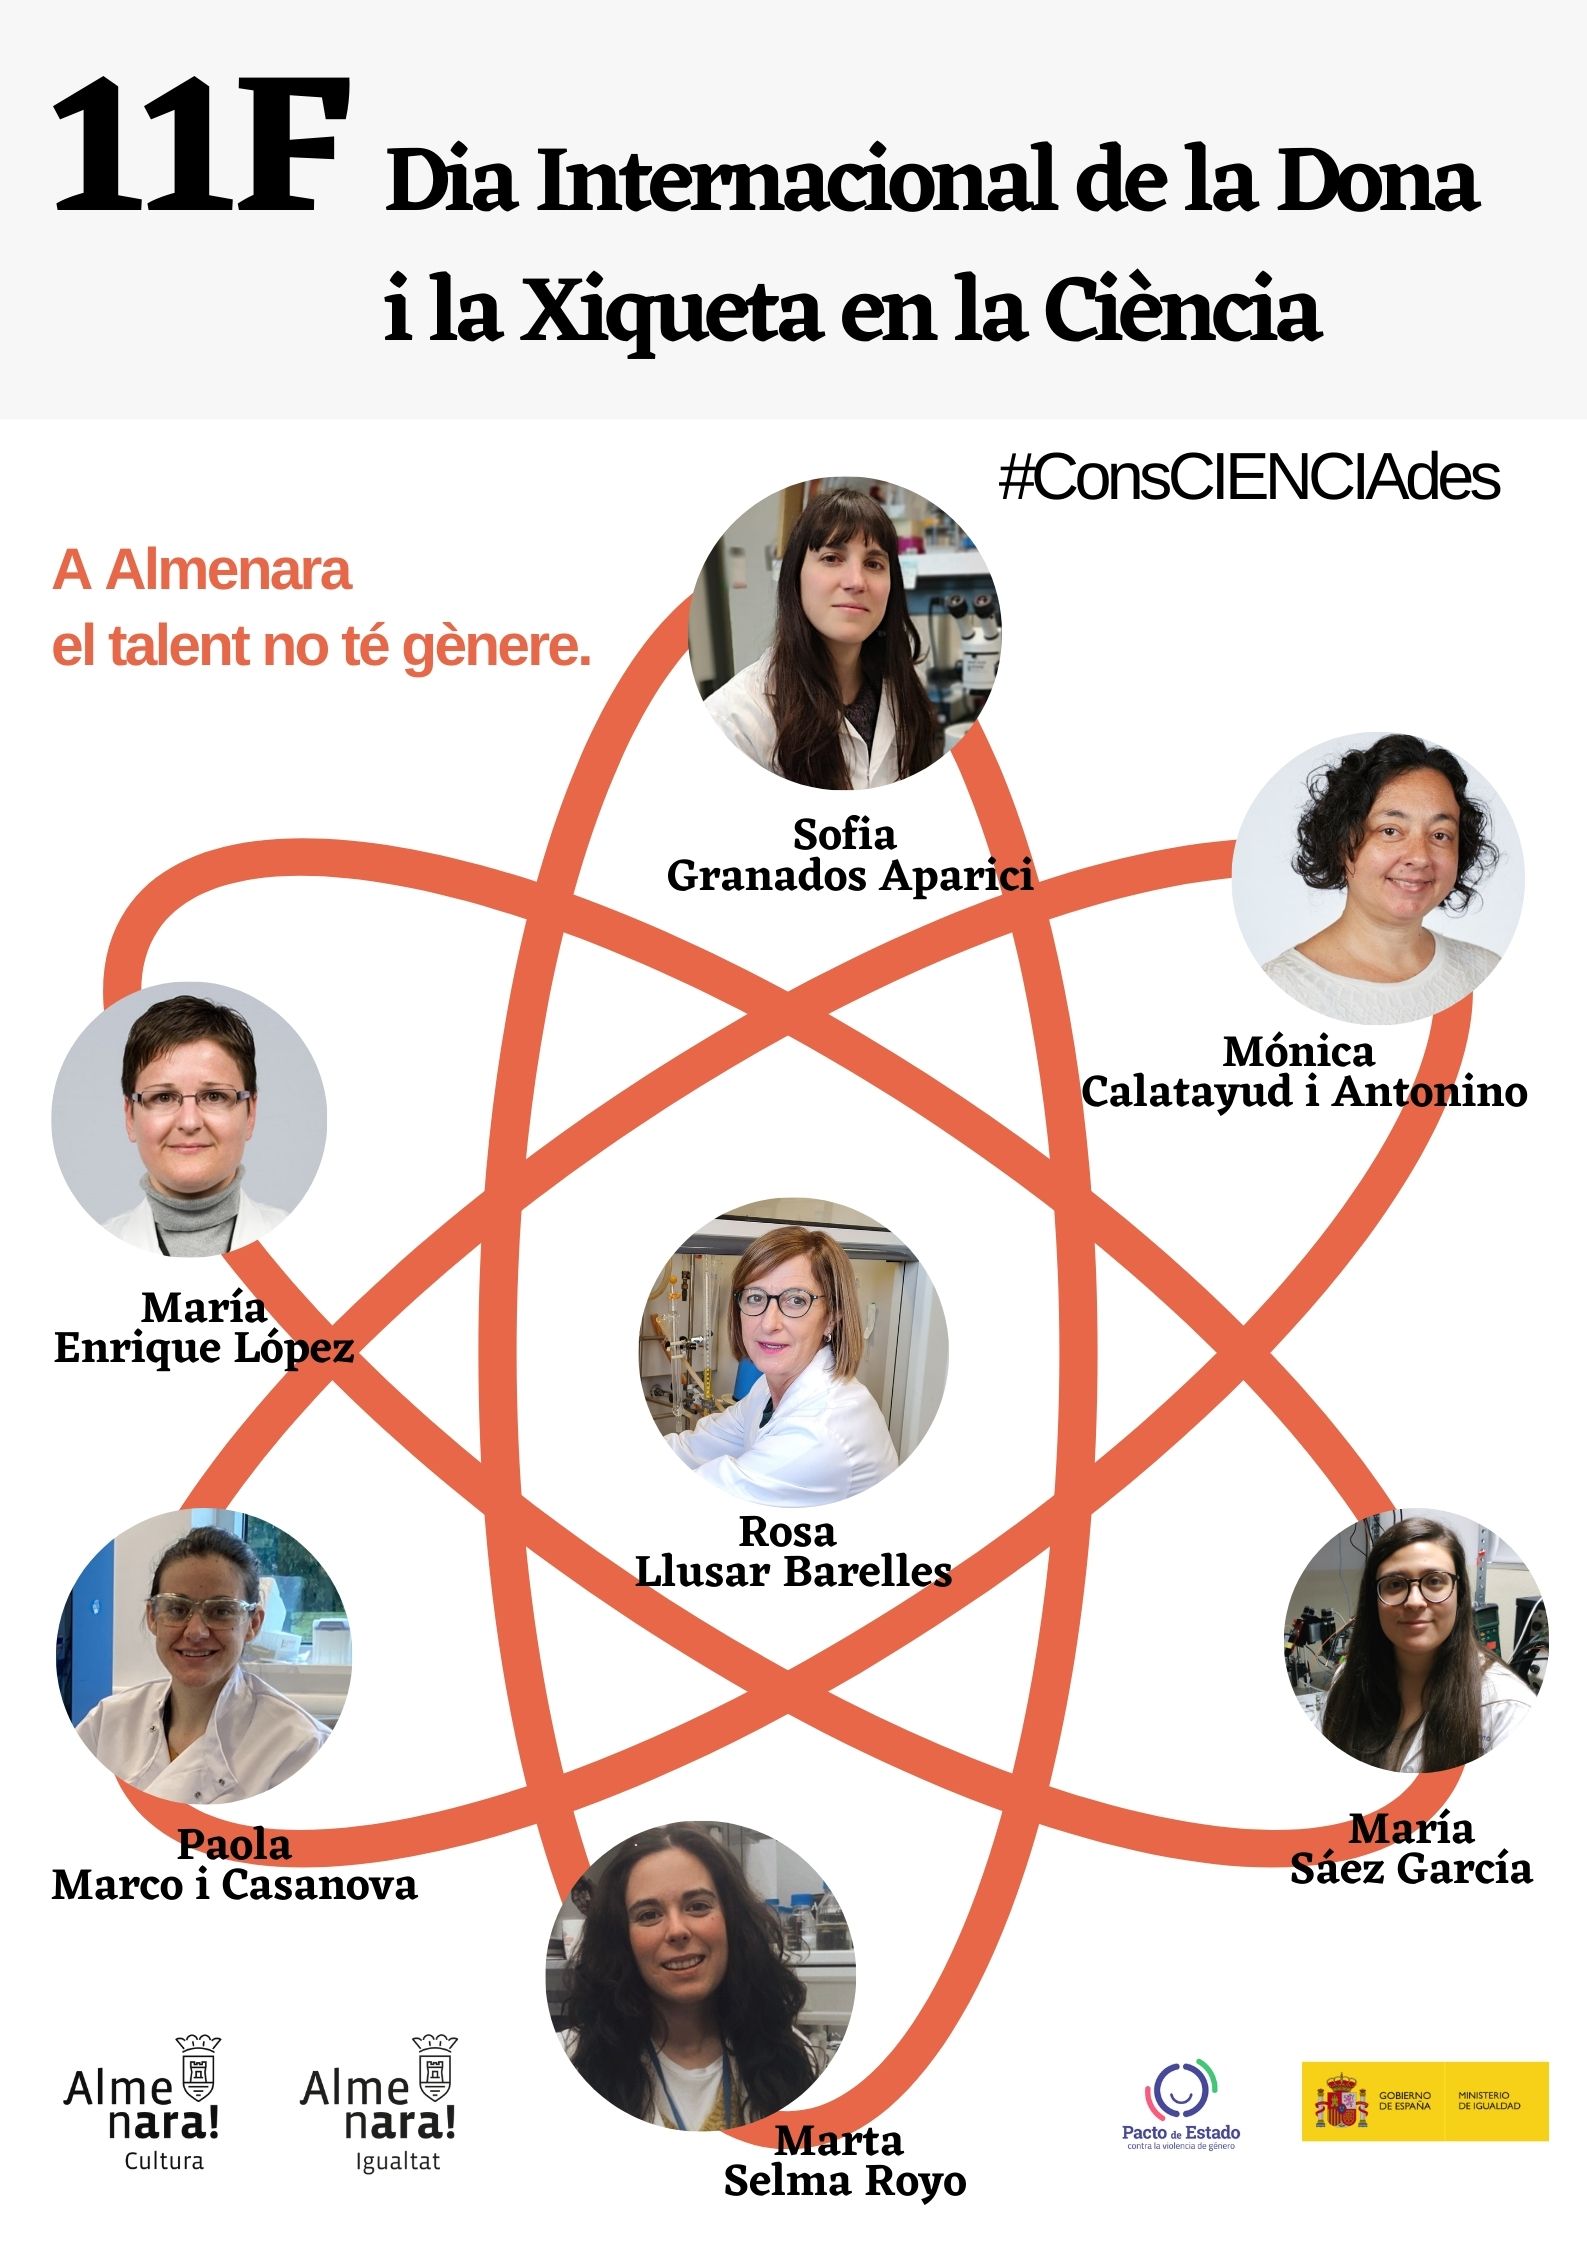 El Ayuntamiento de Almenara inicia la campaña “ConsCIENCIAdes, a Almenara el talent no te gènere” con motivo del Día Internacional de la mujer y la niña en la ciencia